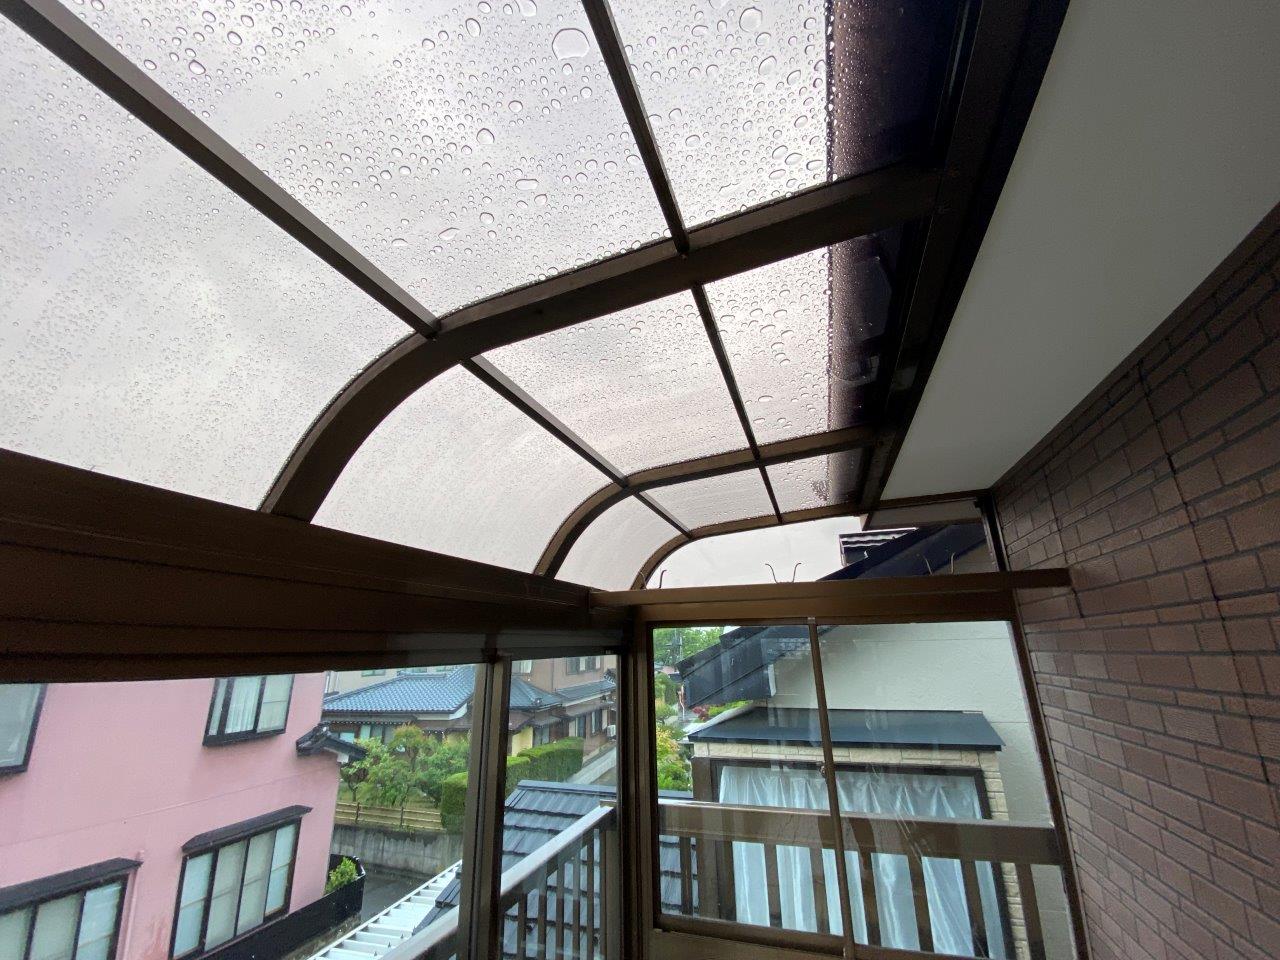 新潟市中央区にて雨漏れしていたため屋根葺き直し、軒天張り替え工事をしたY様のアンケート